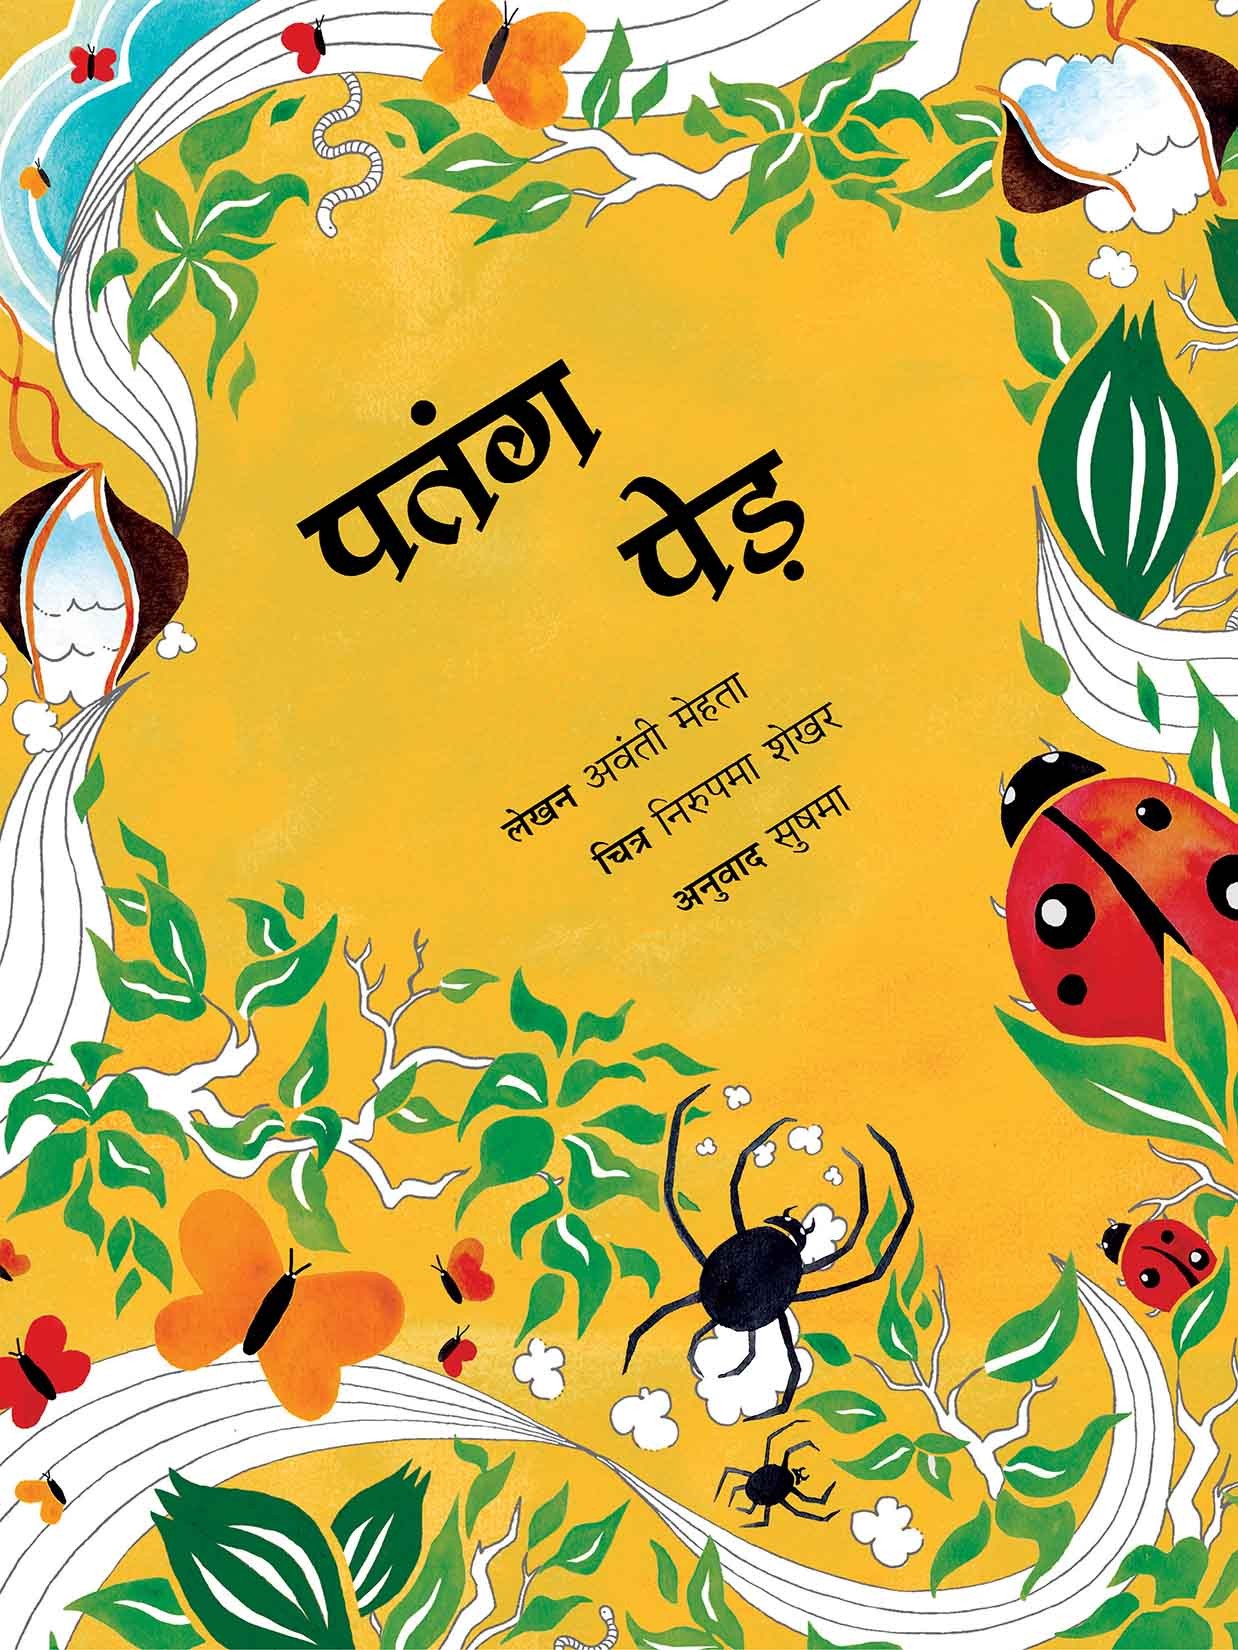 The Kite Tree/Patang Ped (Hindi)